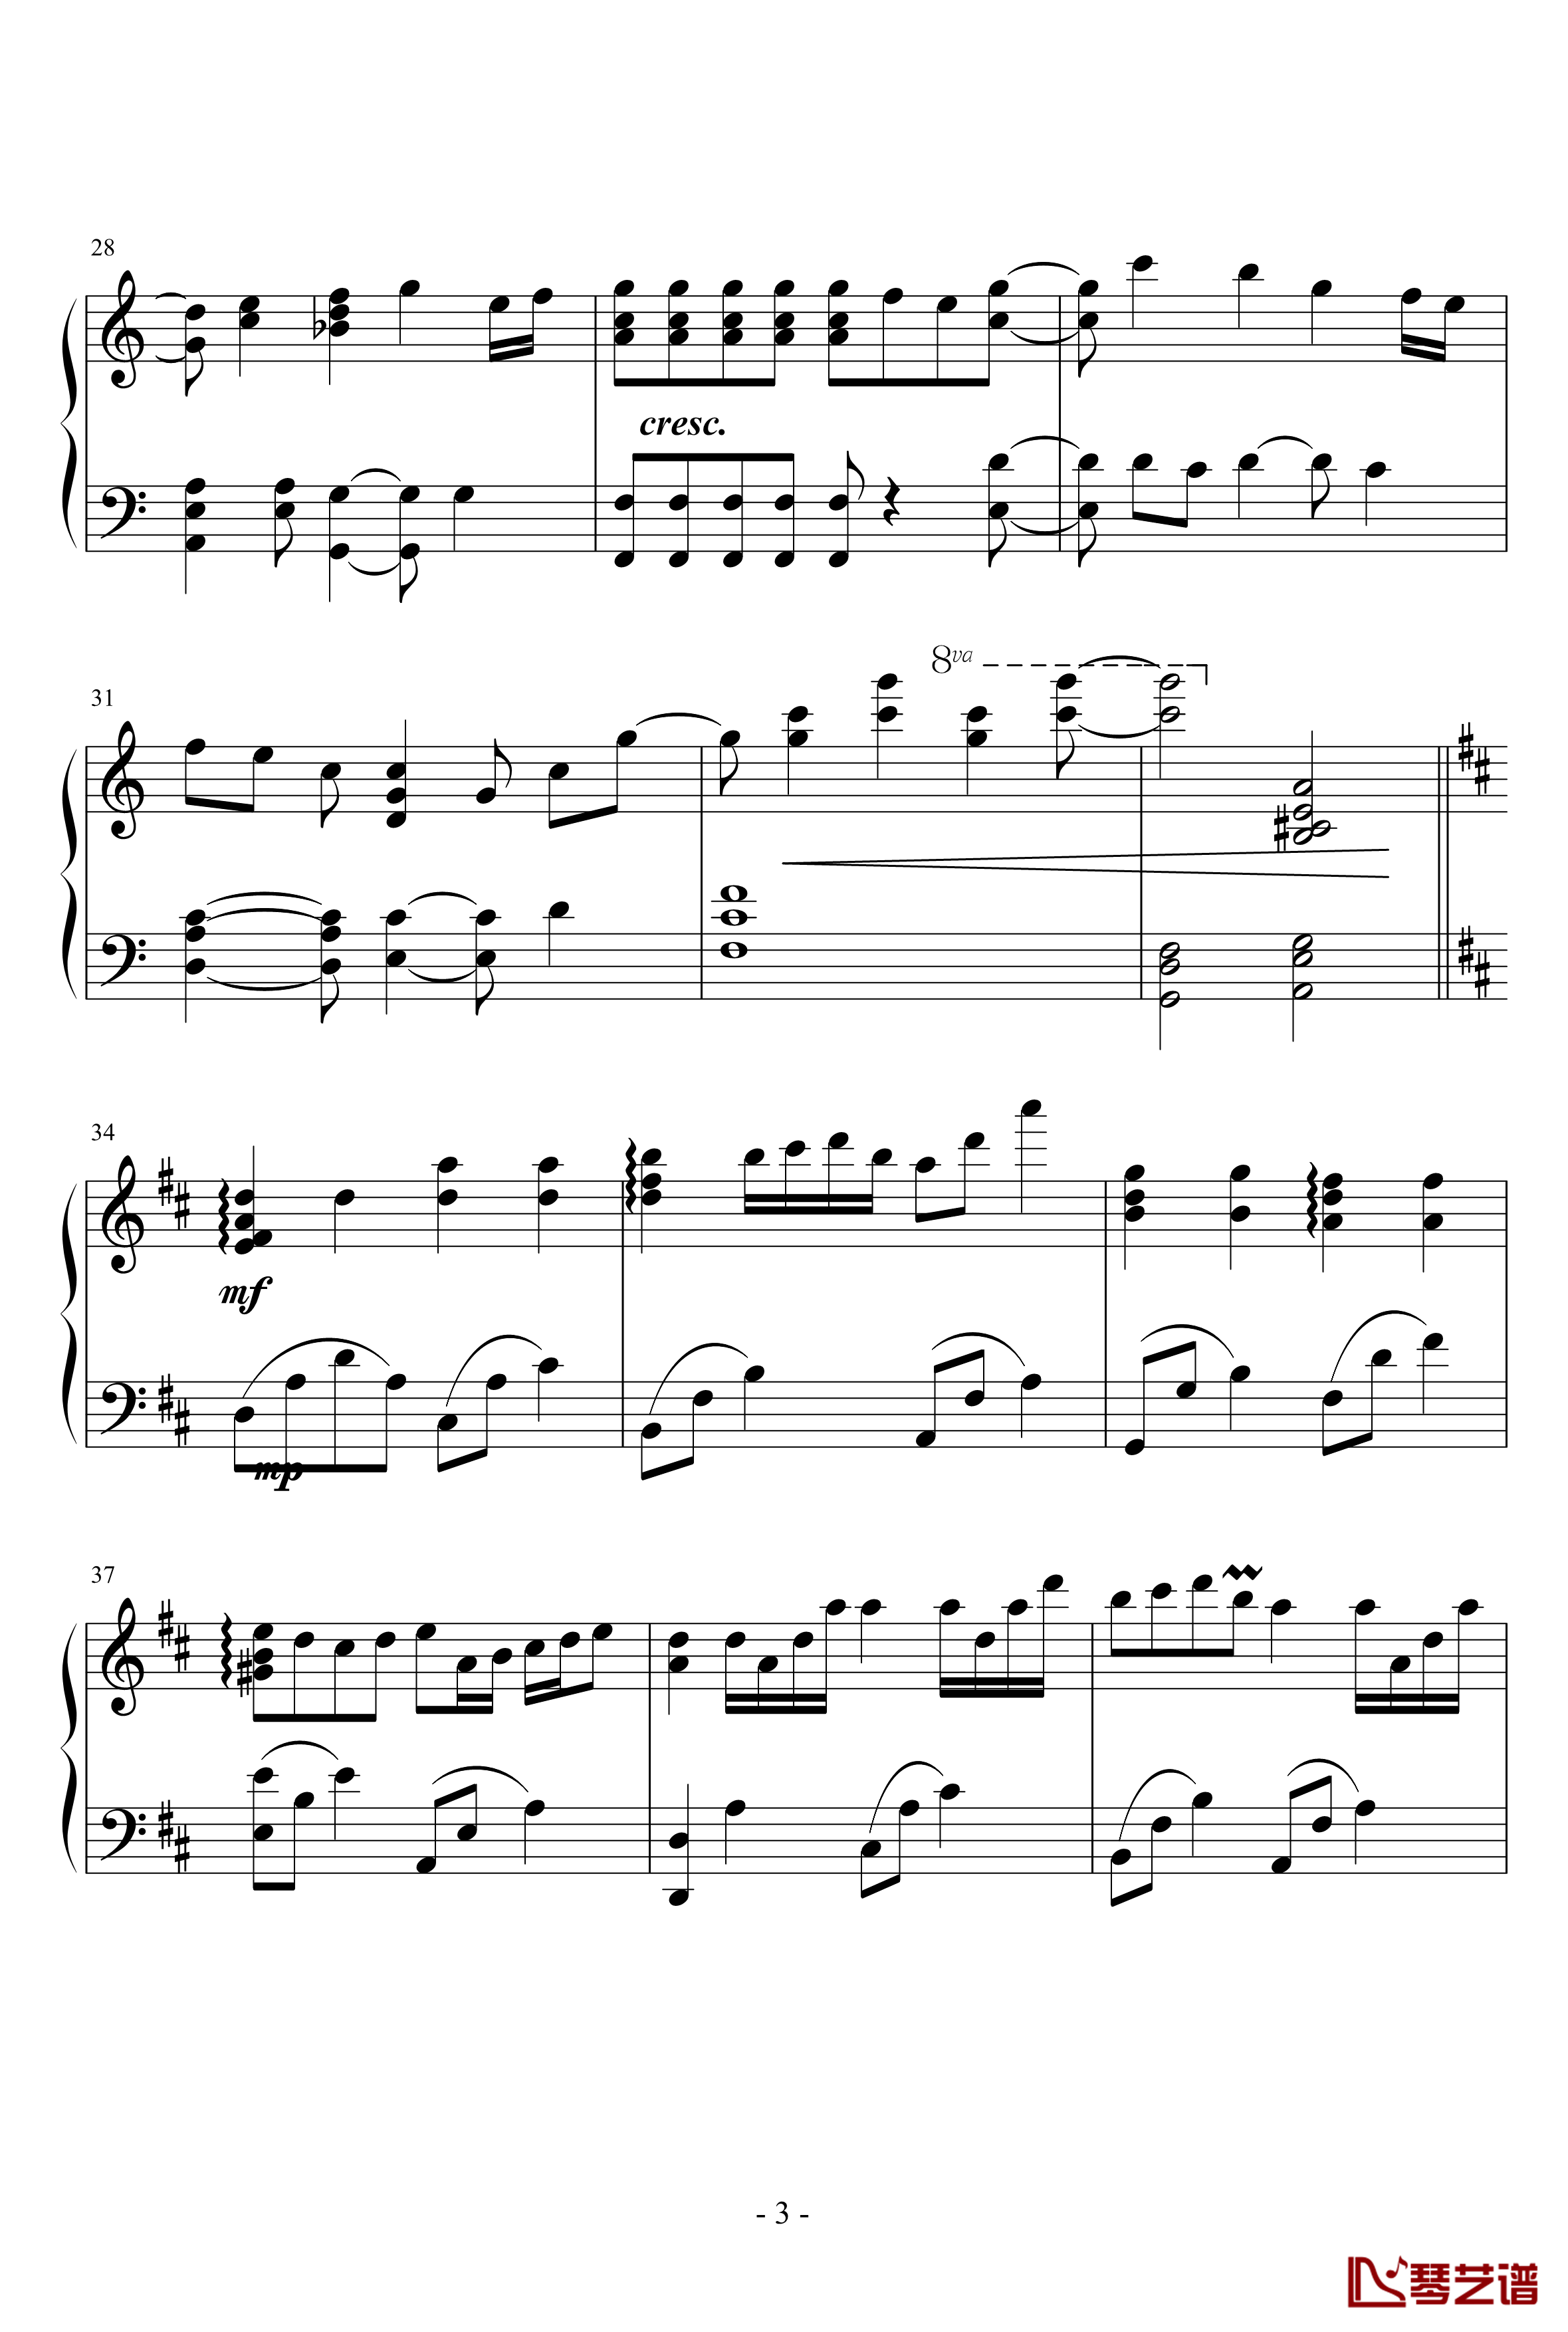 小星星幻想曲钢琴谱-完美版-V.K克